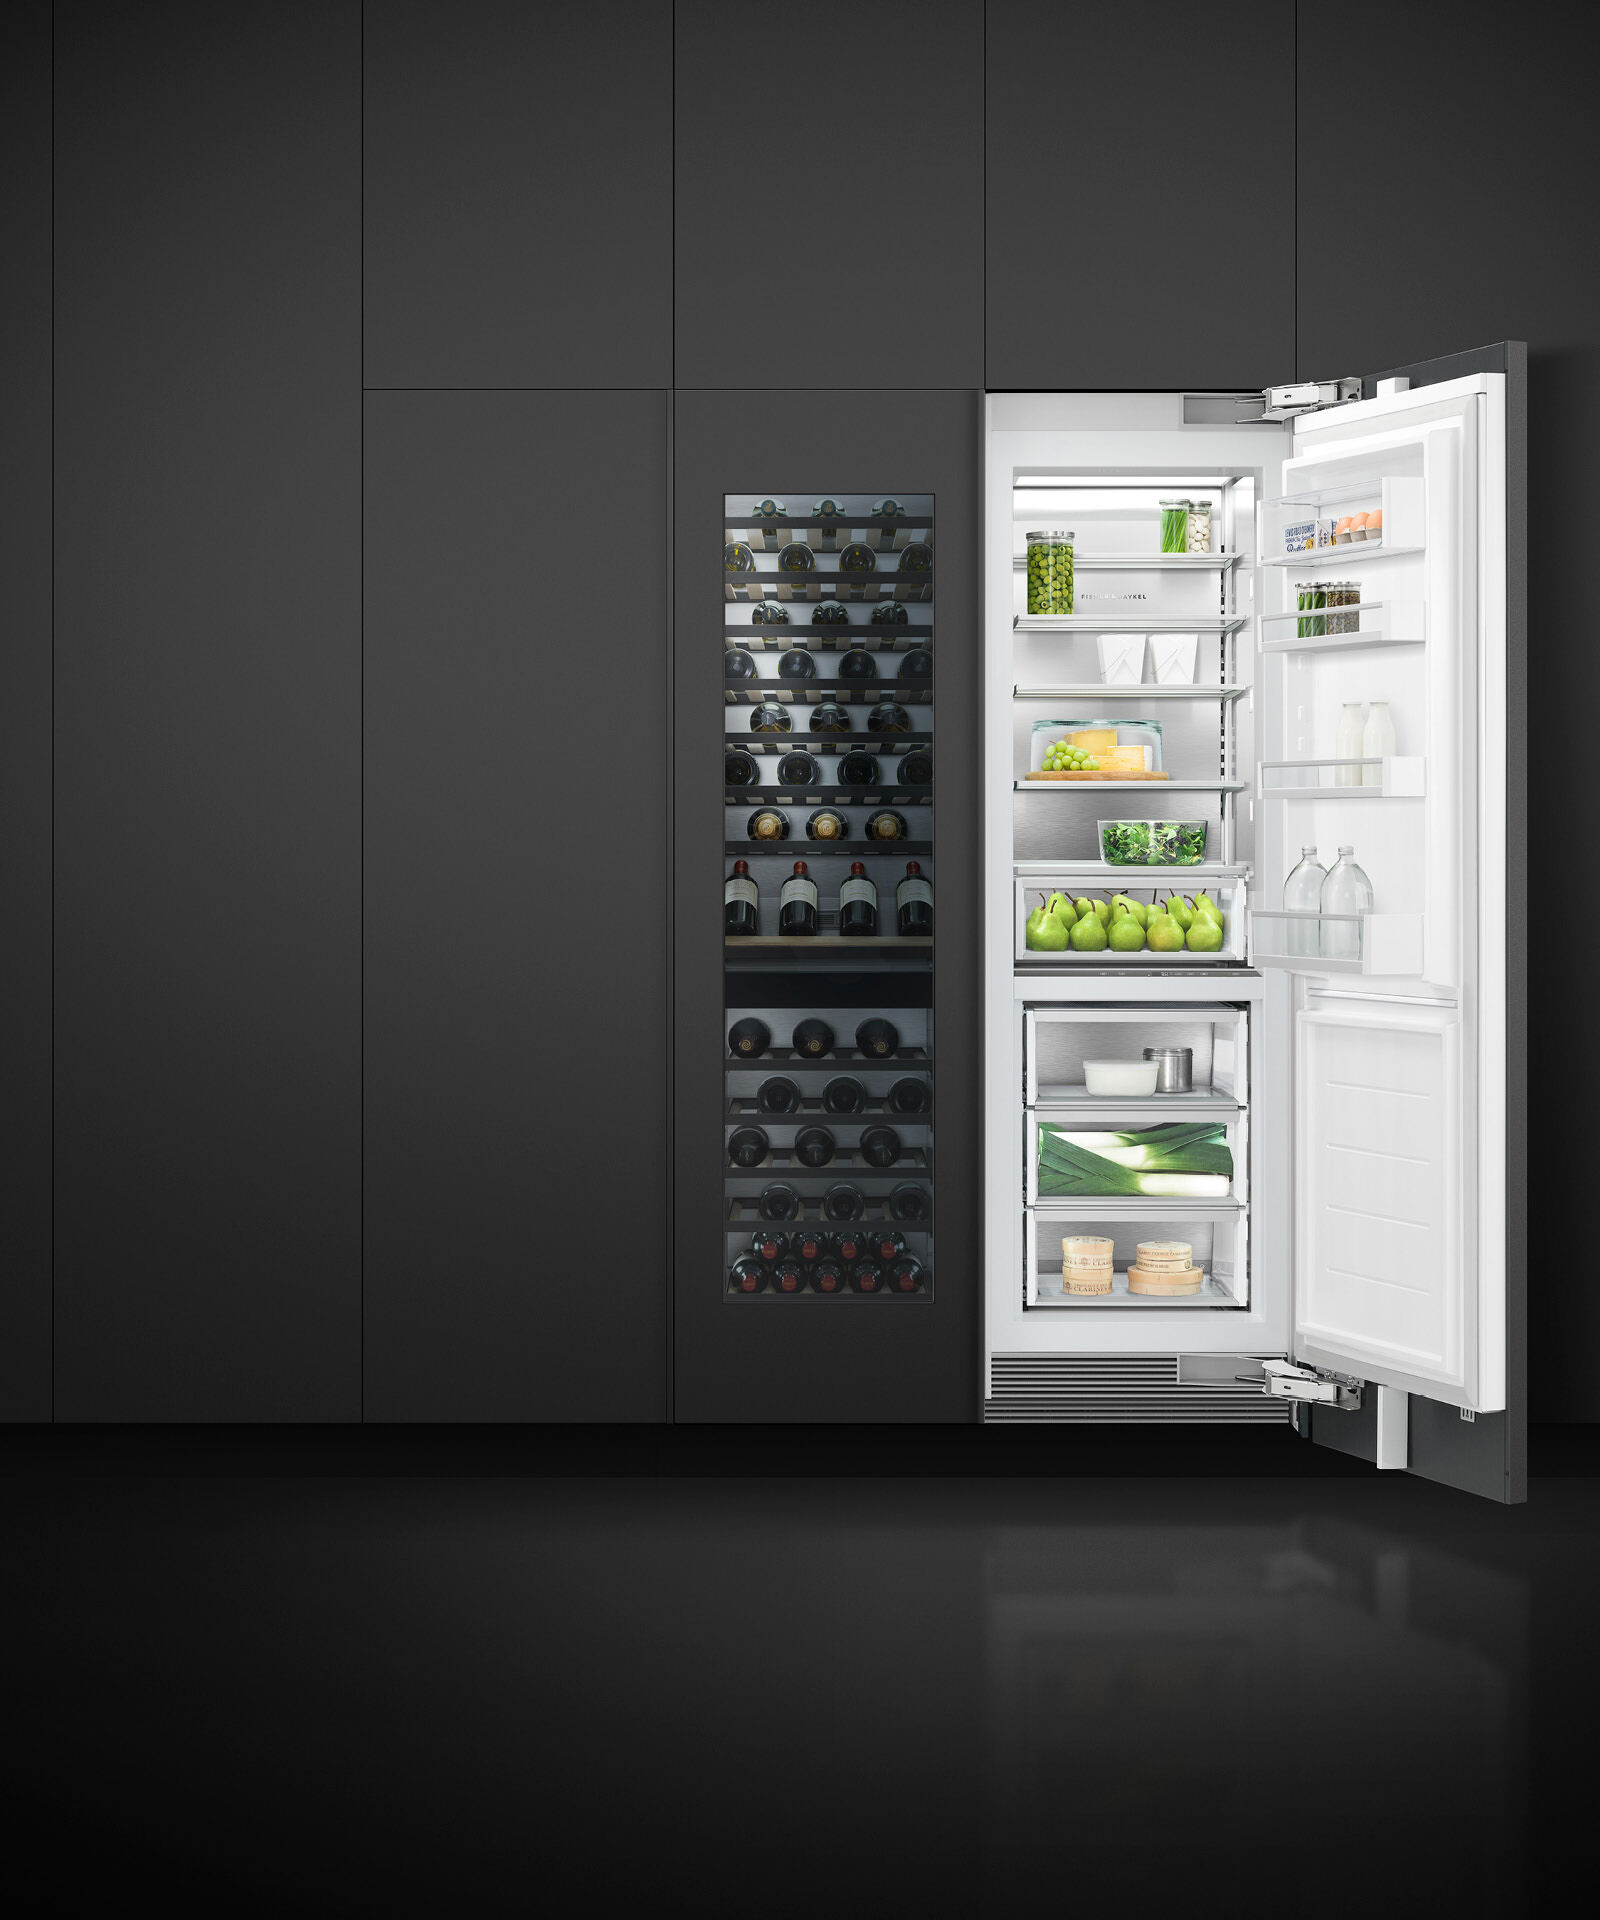 嵌入式立式冷凍櫃, 61cm, 自動製冰 gallery image 10.0